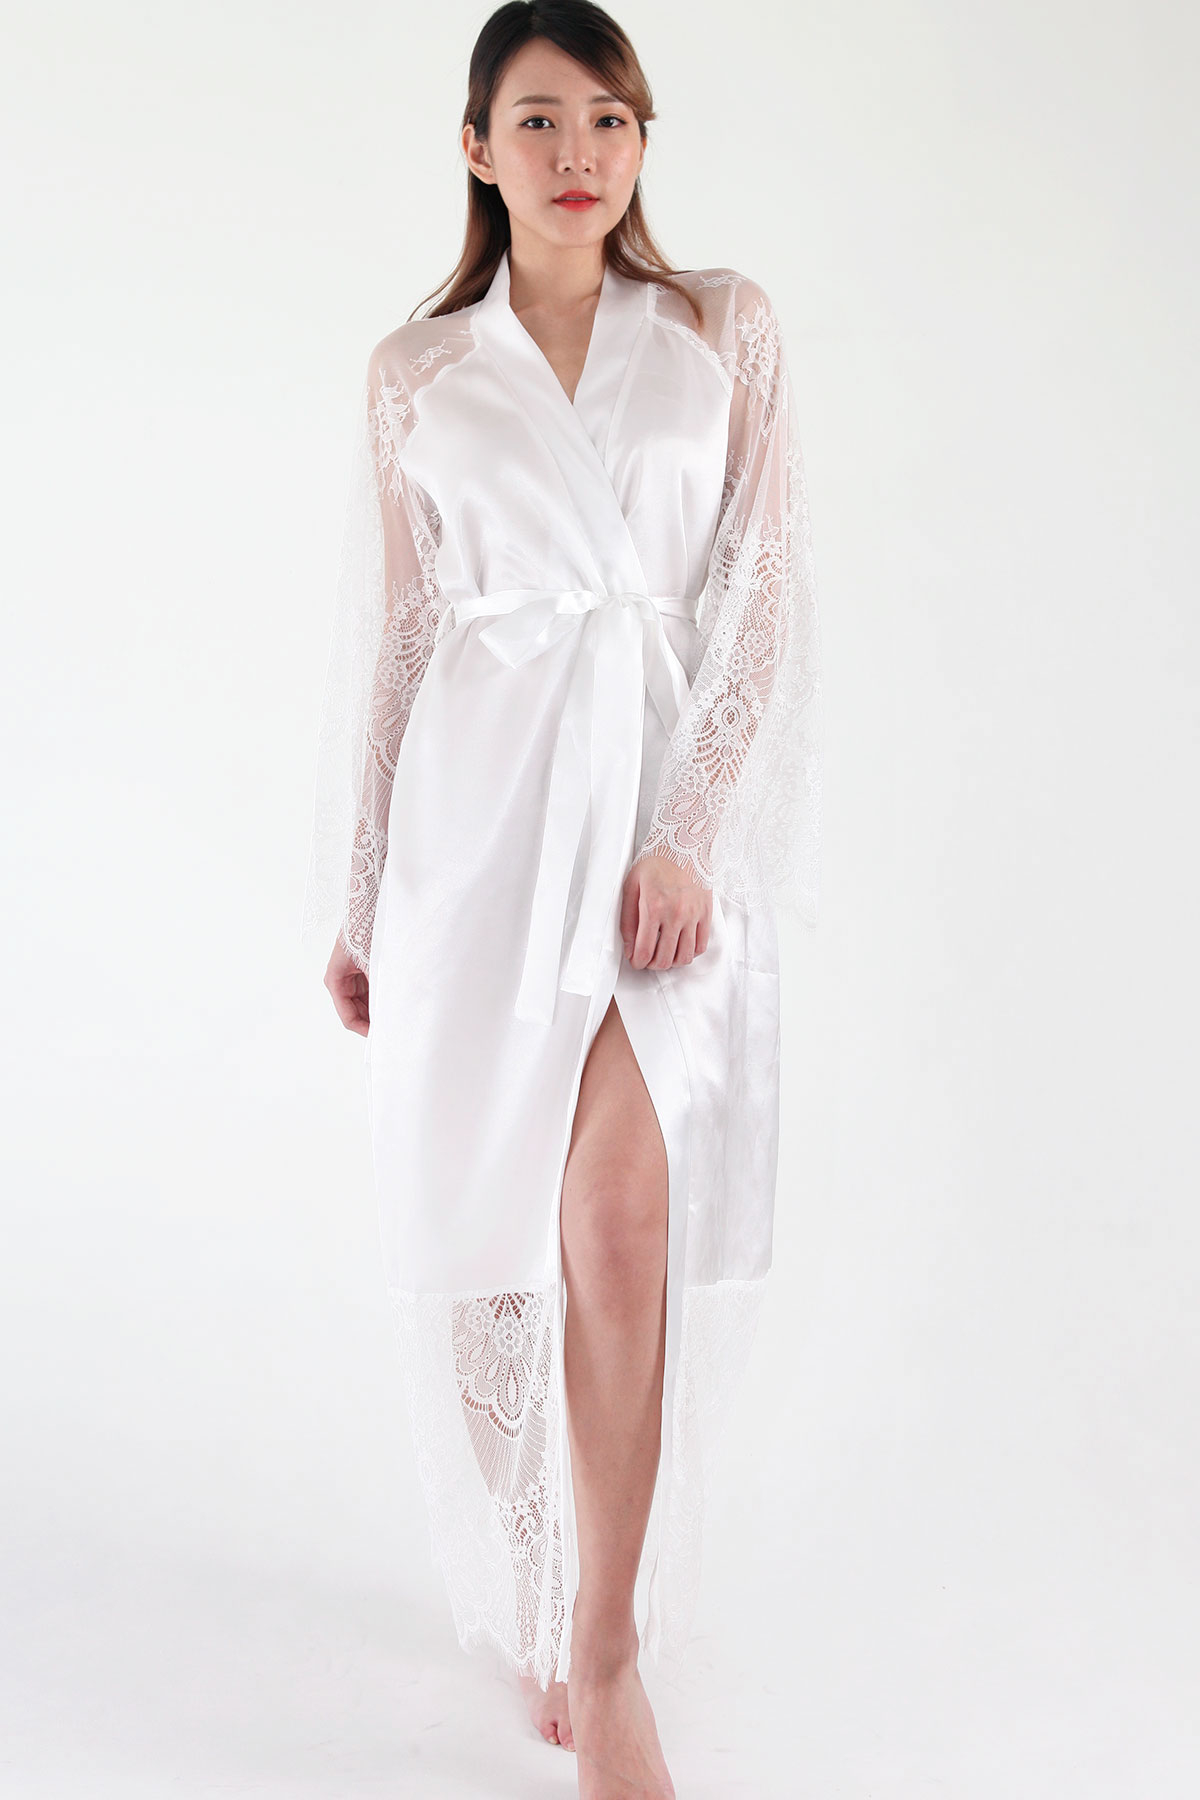 Hanna Eyelash Lace Bridal Robe